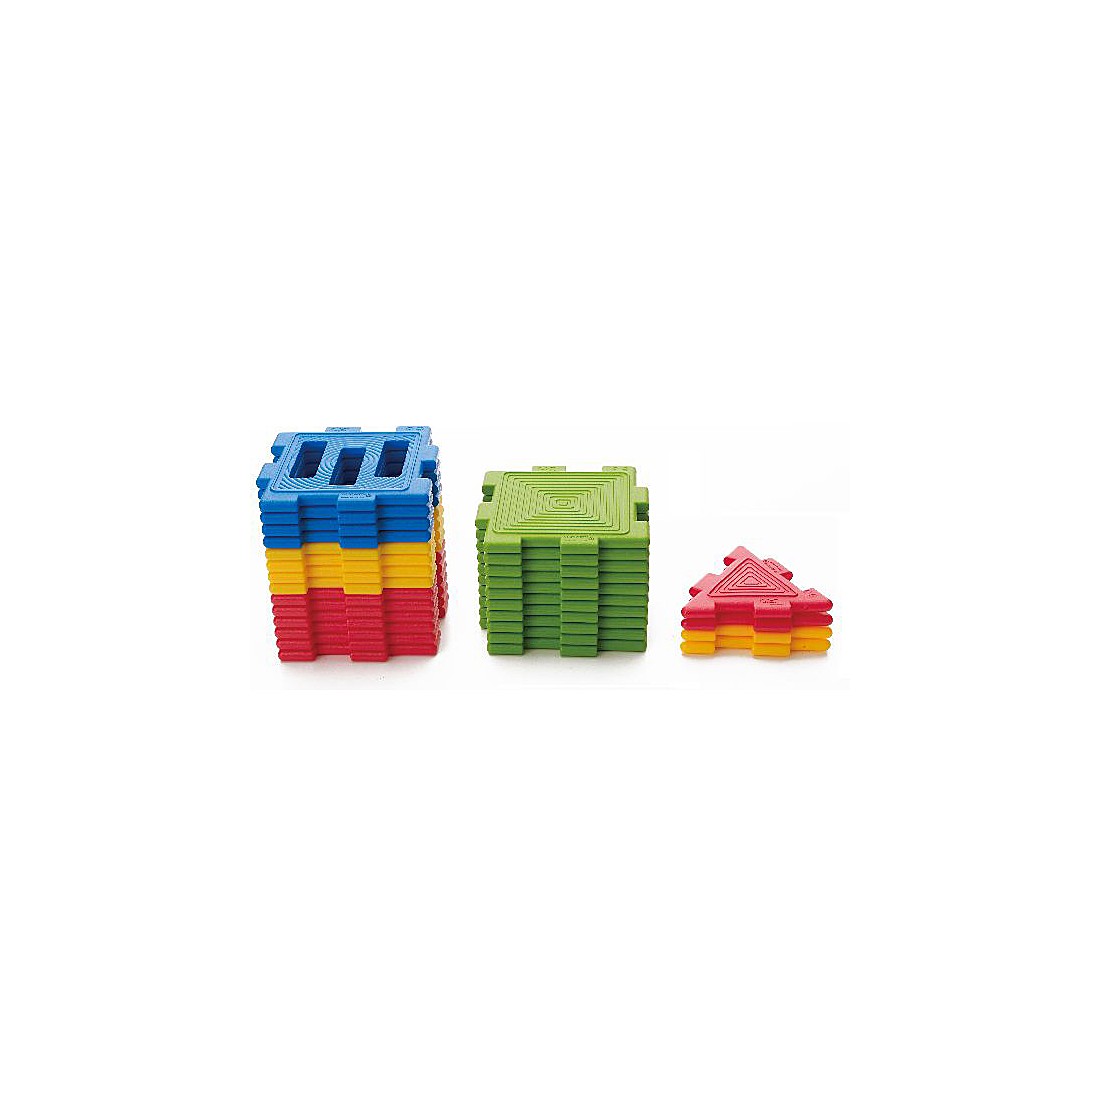 28 mini-blocs de construction - 2